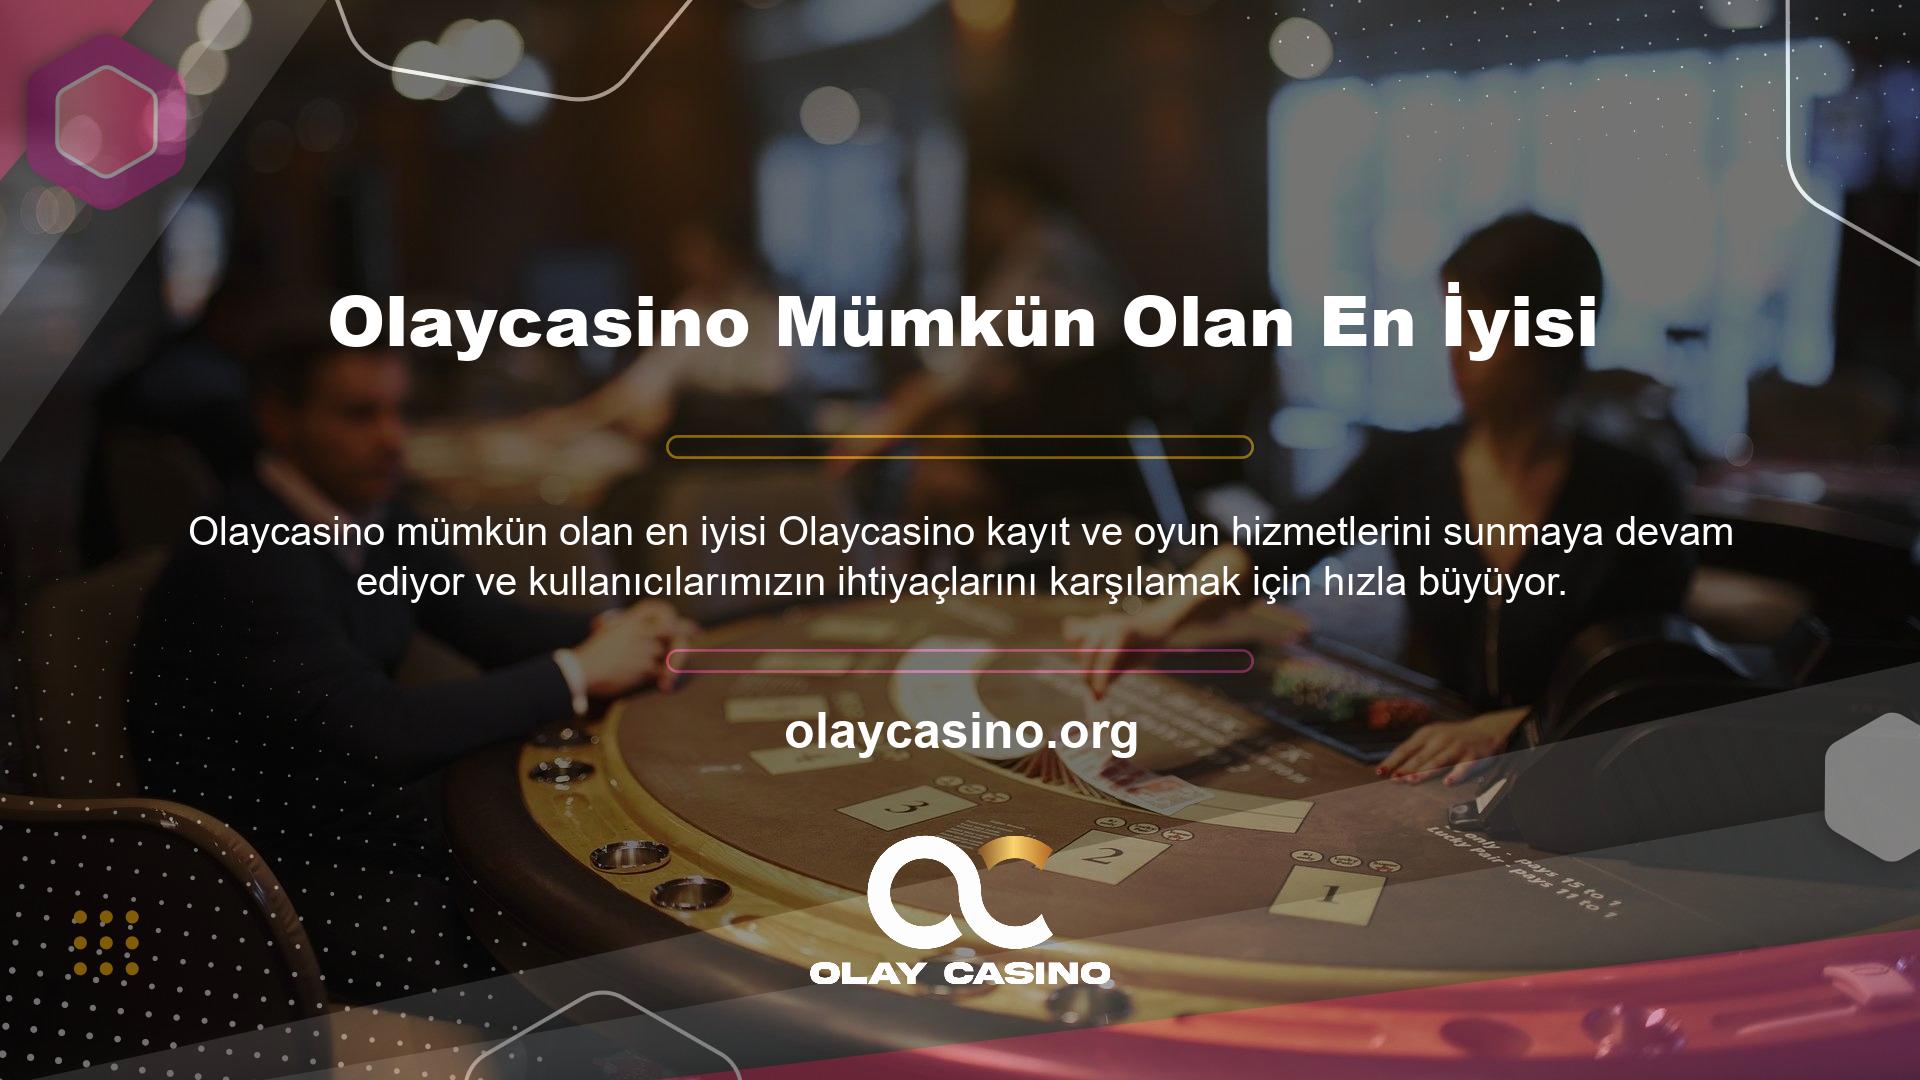 Olaycasino Türkiye'de hala yasadışı bir casino sitesi olduğundan, birçok oyuncu Olaycasino araştırırken bu konuya öncelik veriyor